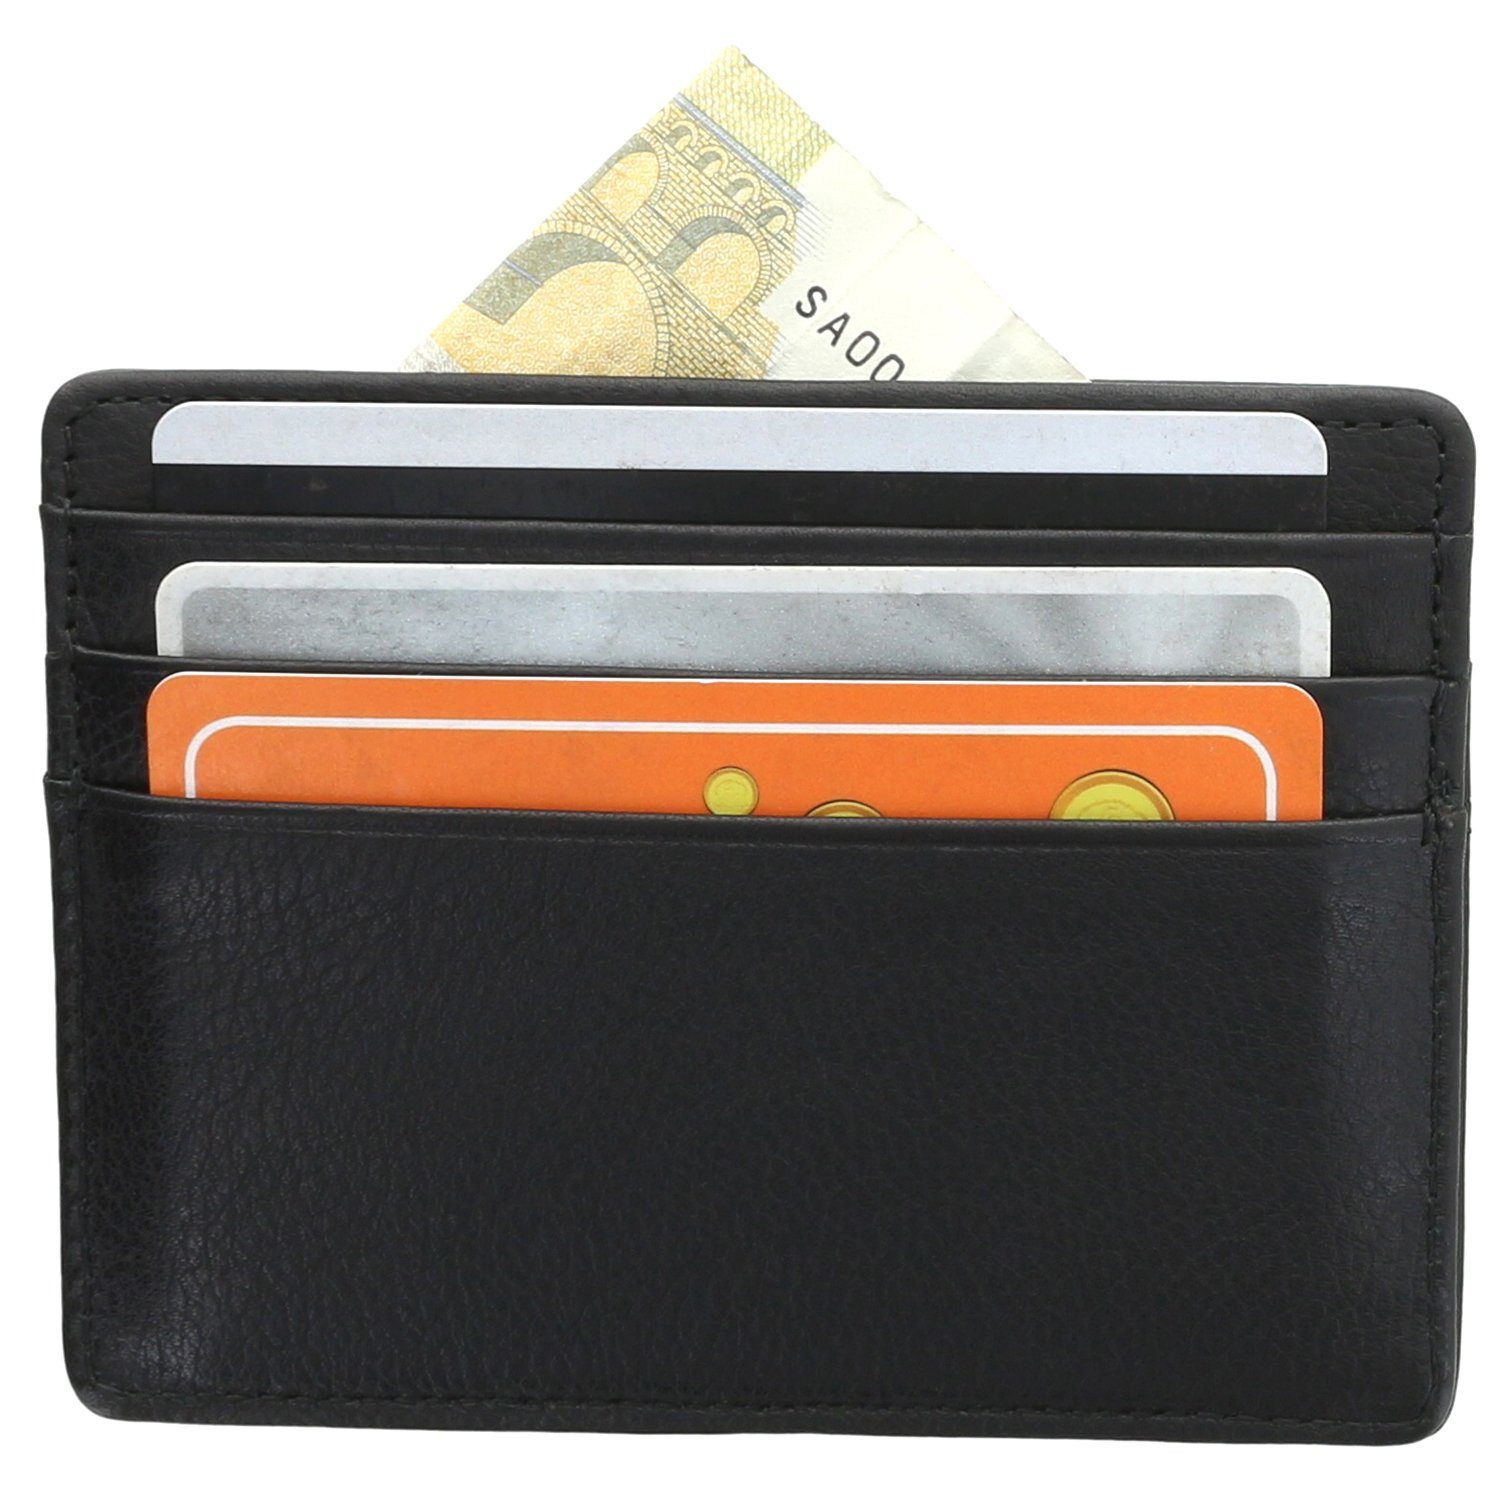 XiRRiX Kartenetui Kreditkarten Etui Herren und Damen Mini Wallet